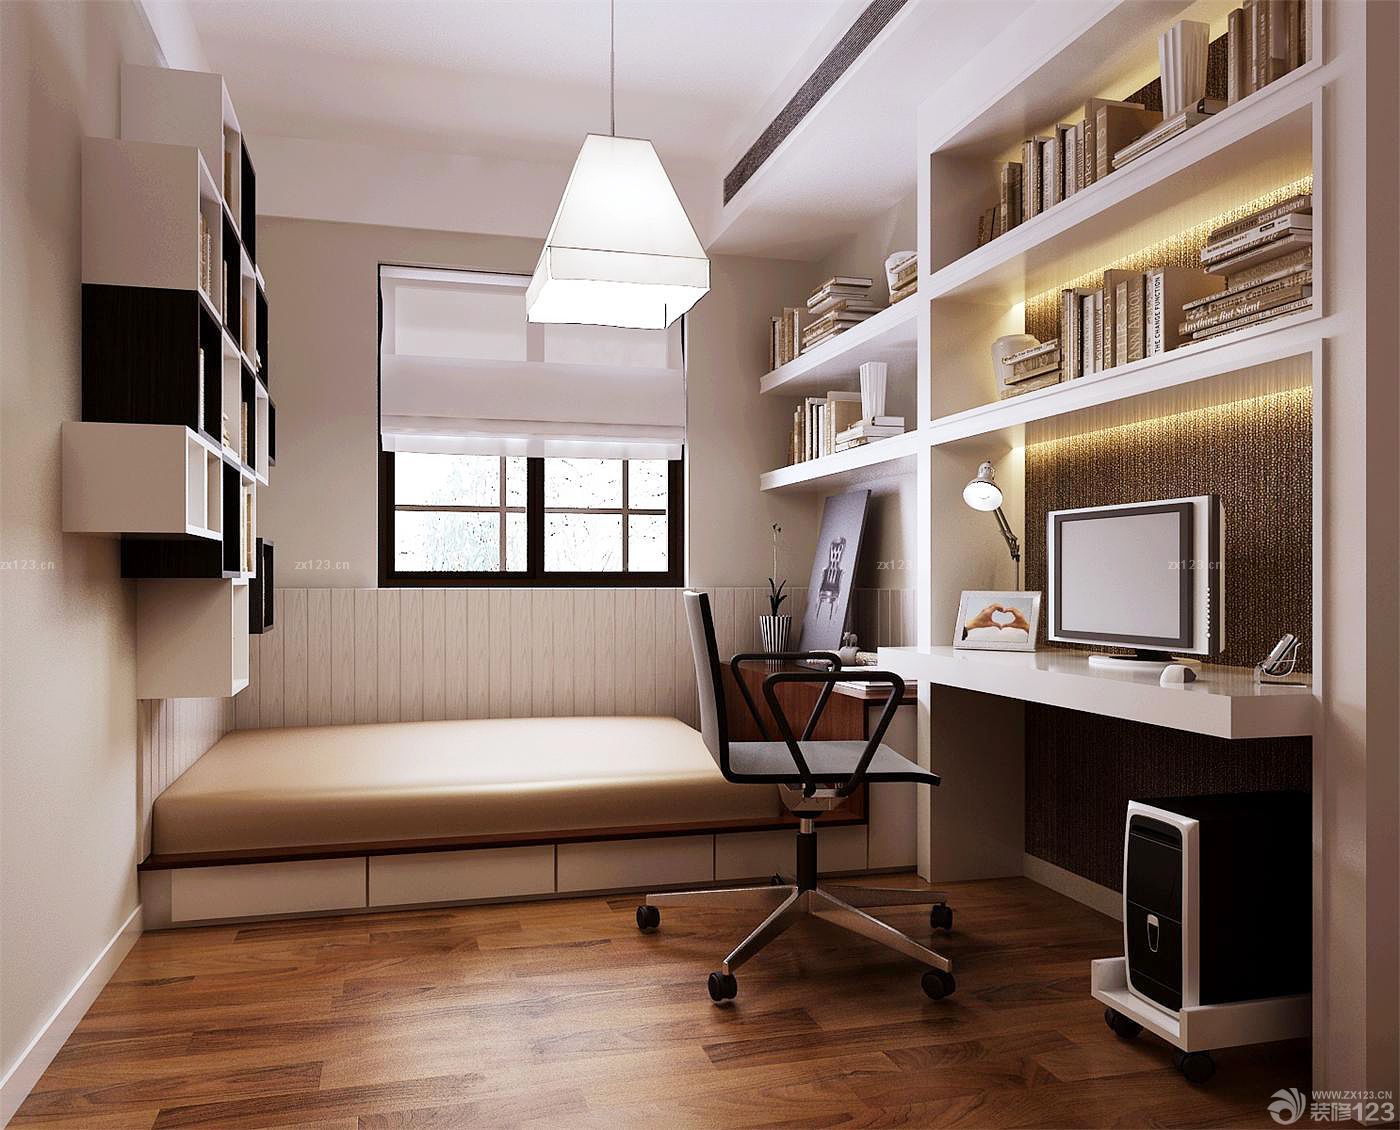 现代欧式混搭风格卧室兼书房榻榻米装修效果图